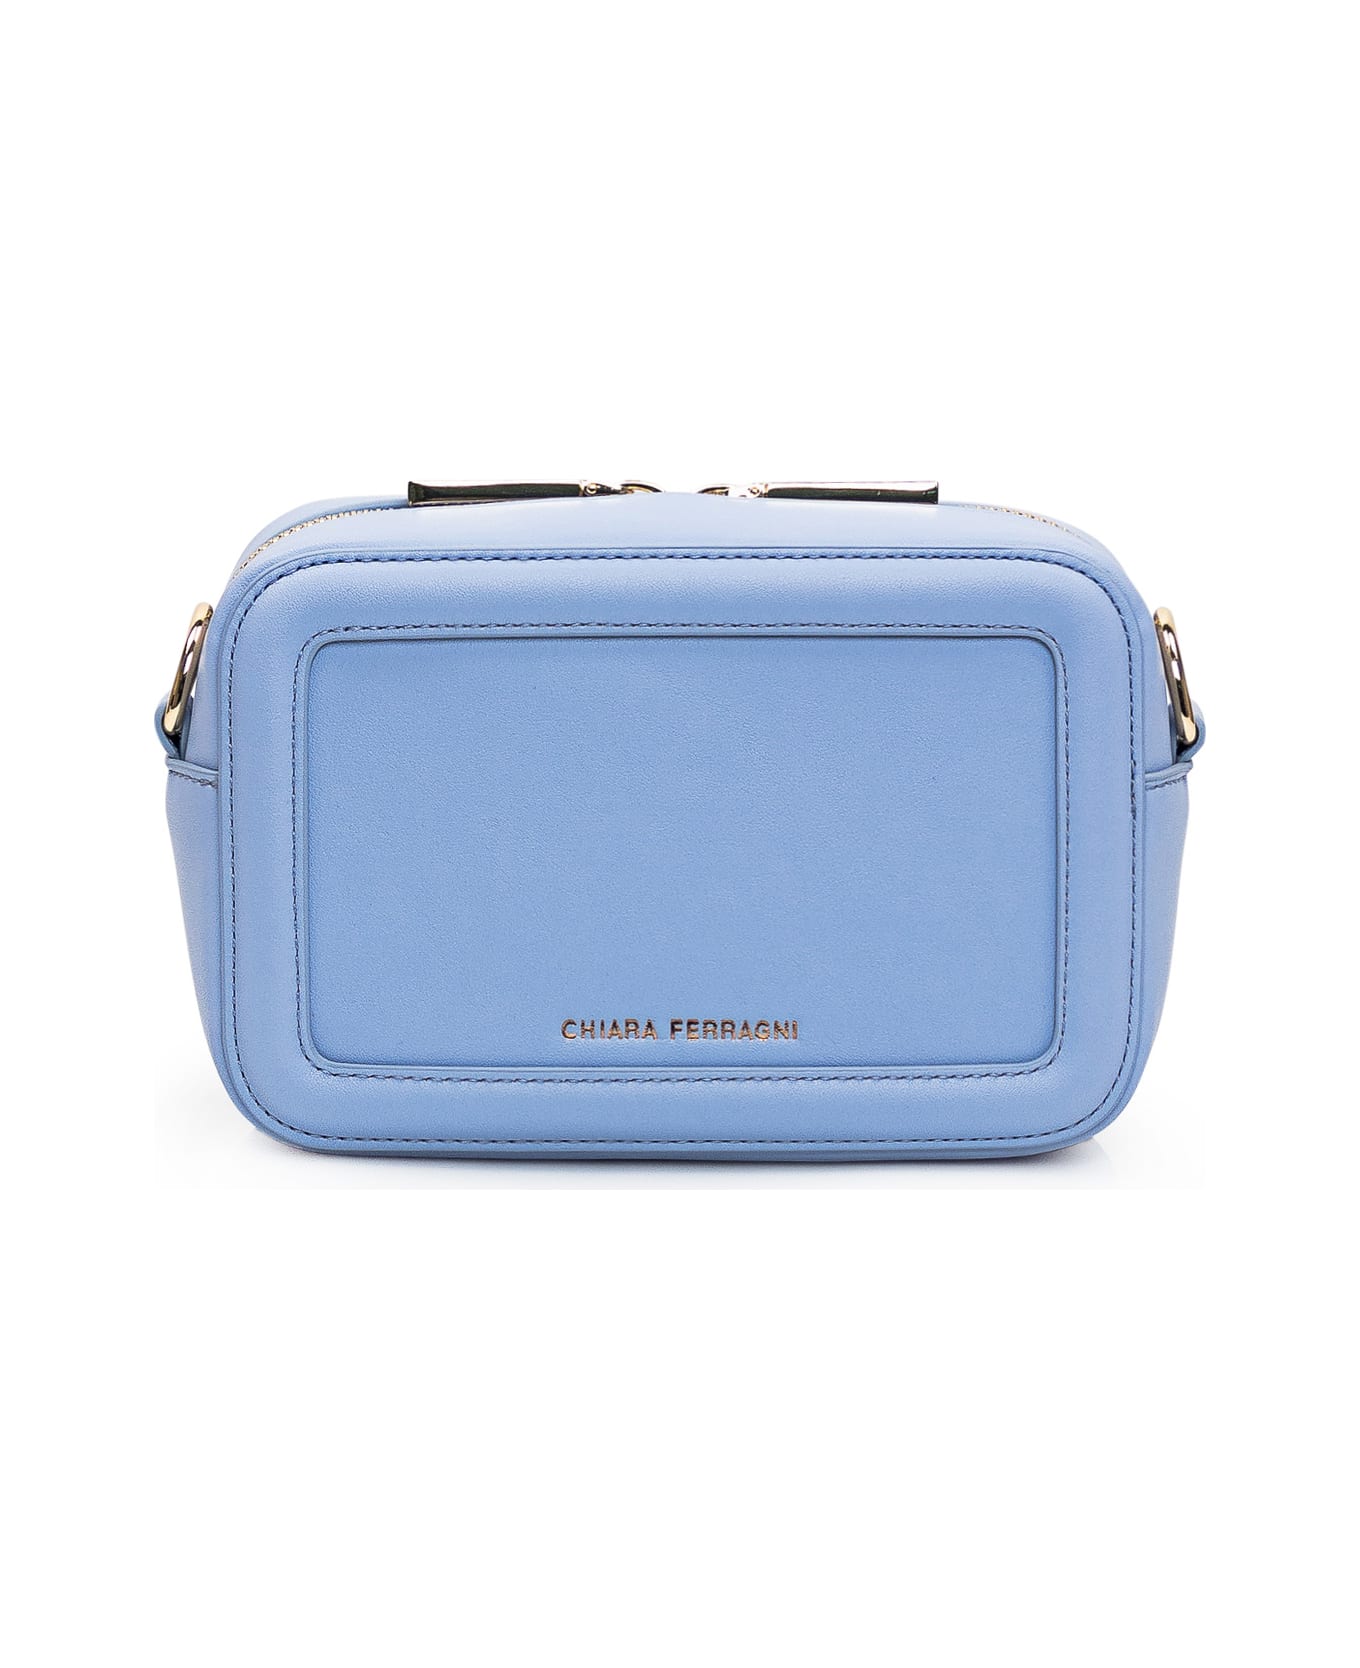 Chiara Ferragni Camera Bag Eyelike - Blue